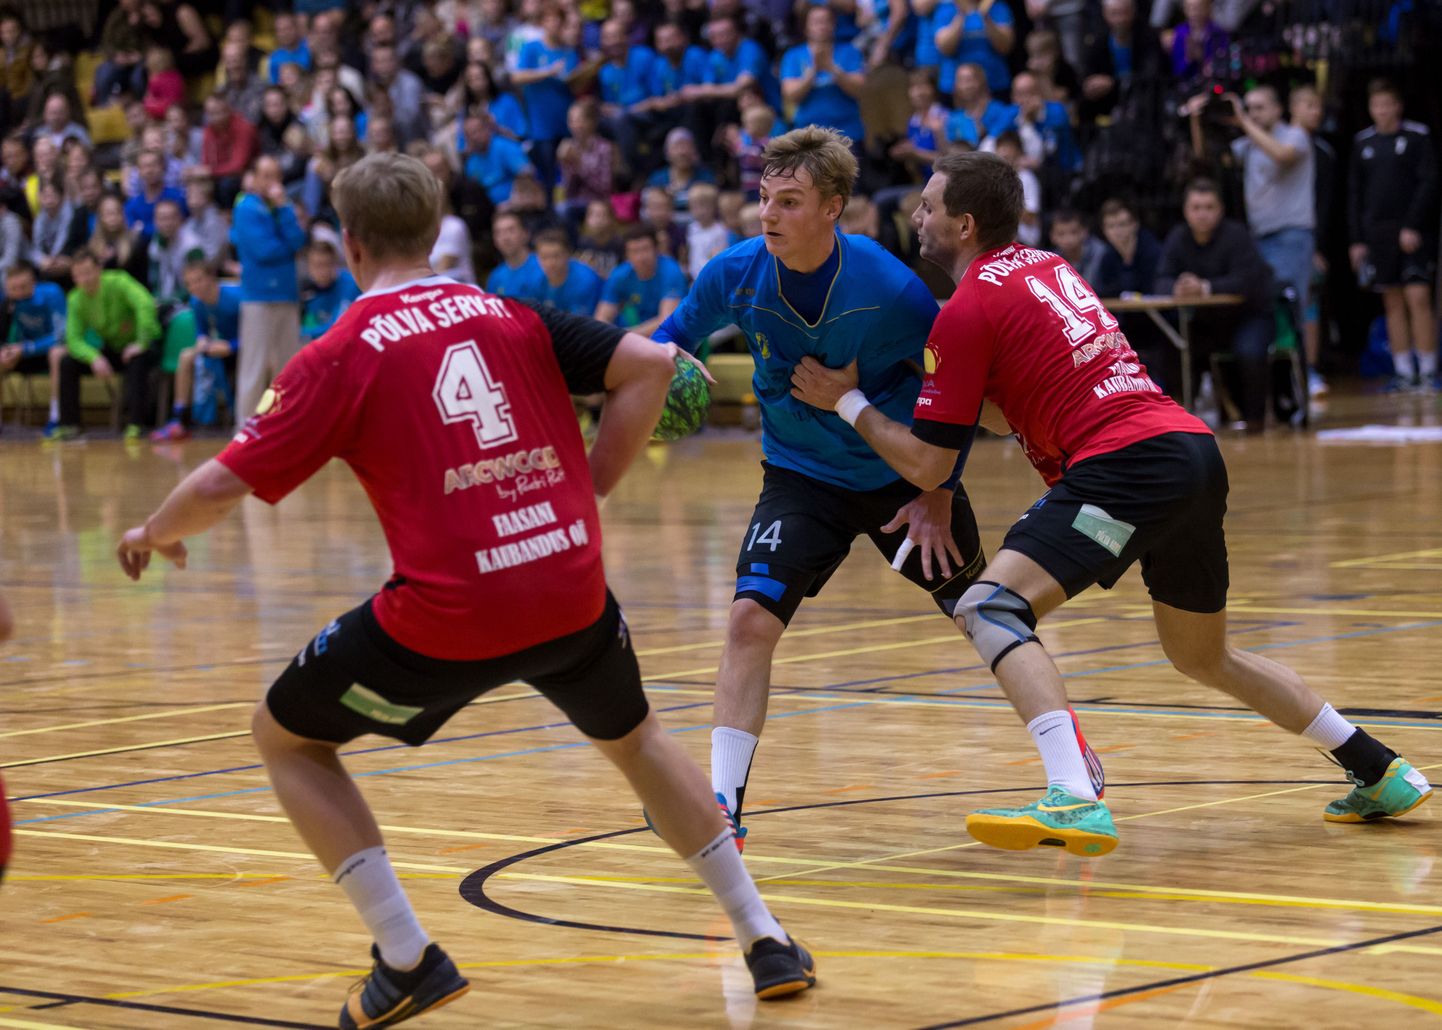 Täna kell 19 kohtuvad Viljandi spordihoones Eesti käsipalli meistrivõistluste meistriliigas Viljandi HC ja Põlva Serviti.